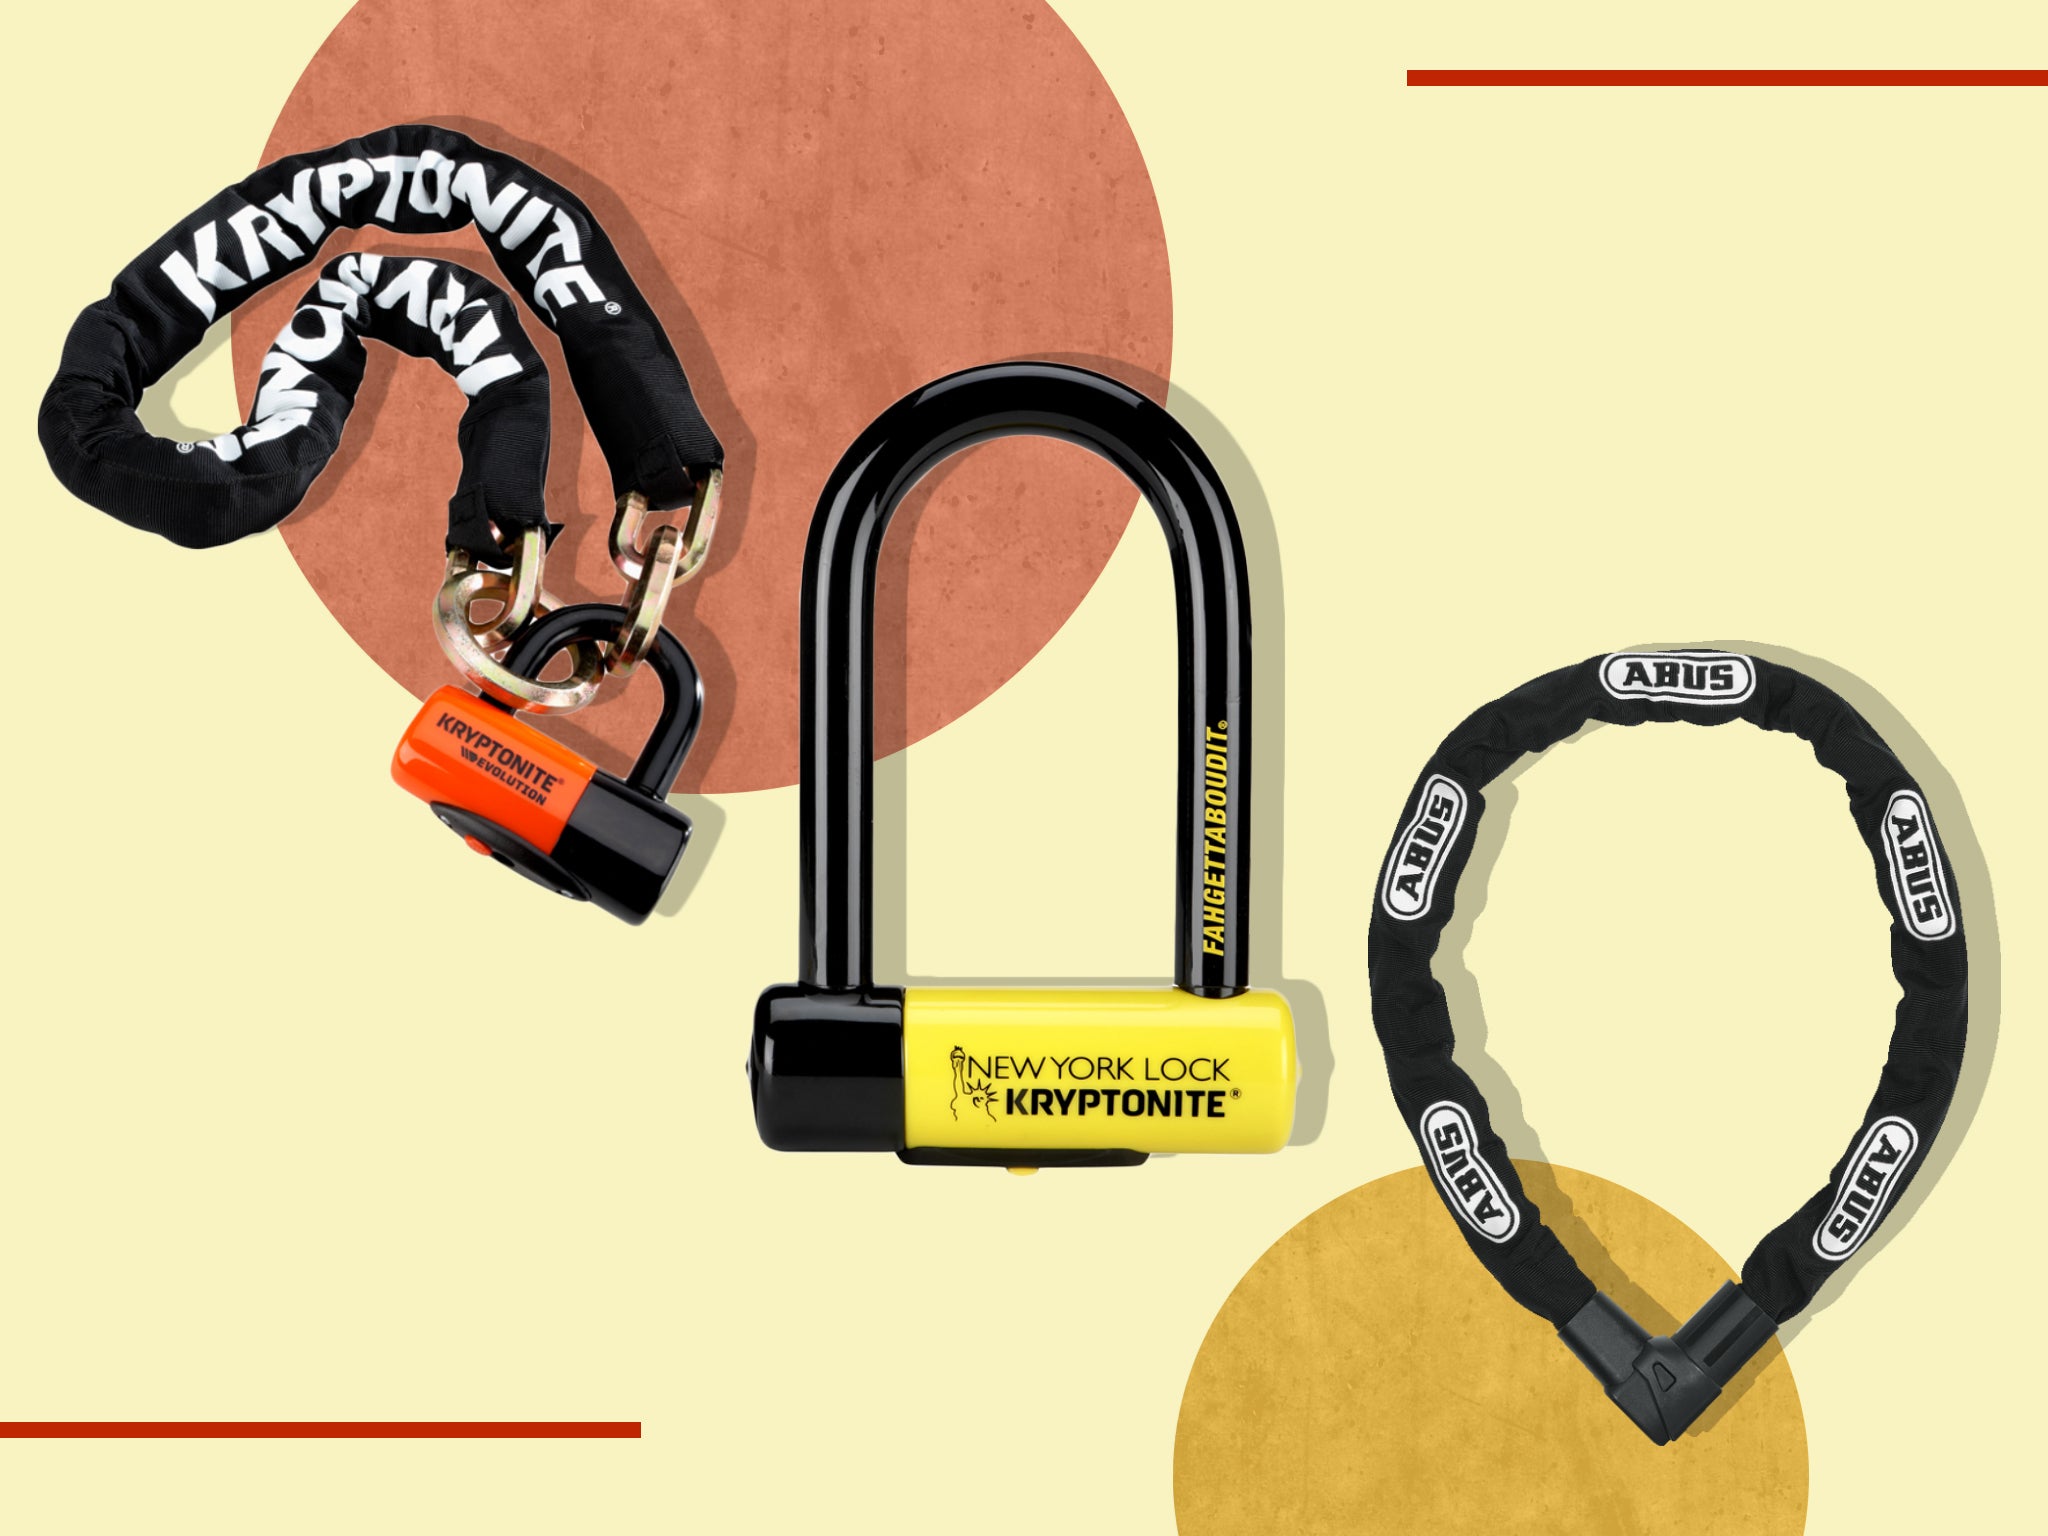 Best Bike Locks and E-bike Locks to Keep Your Ride Secure